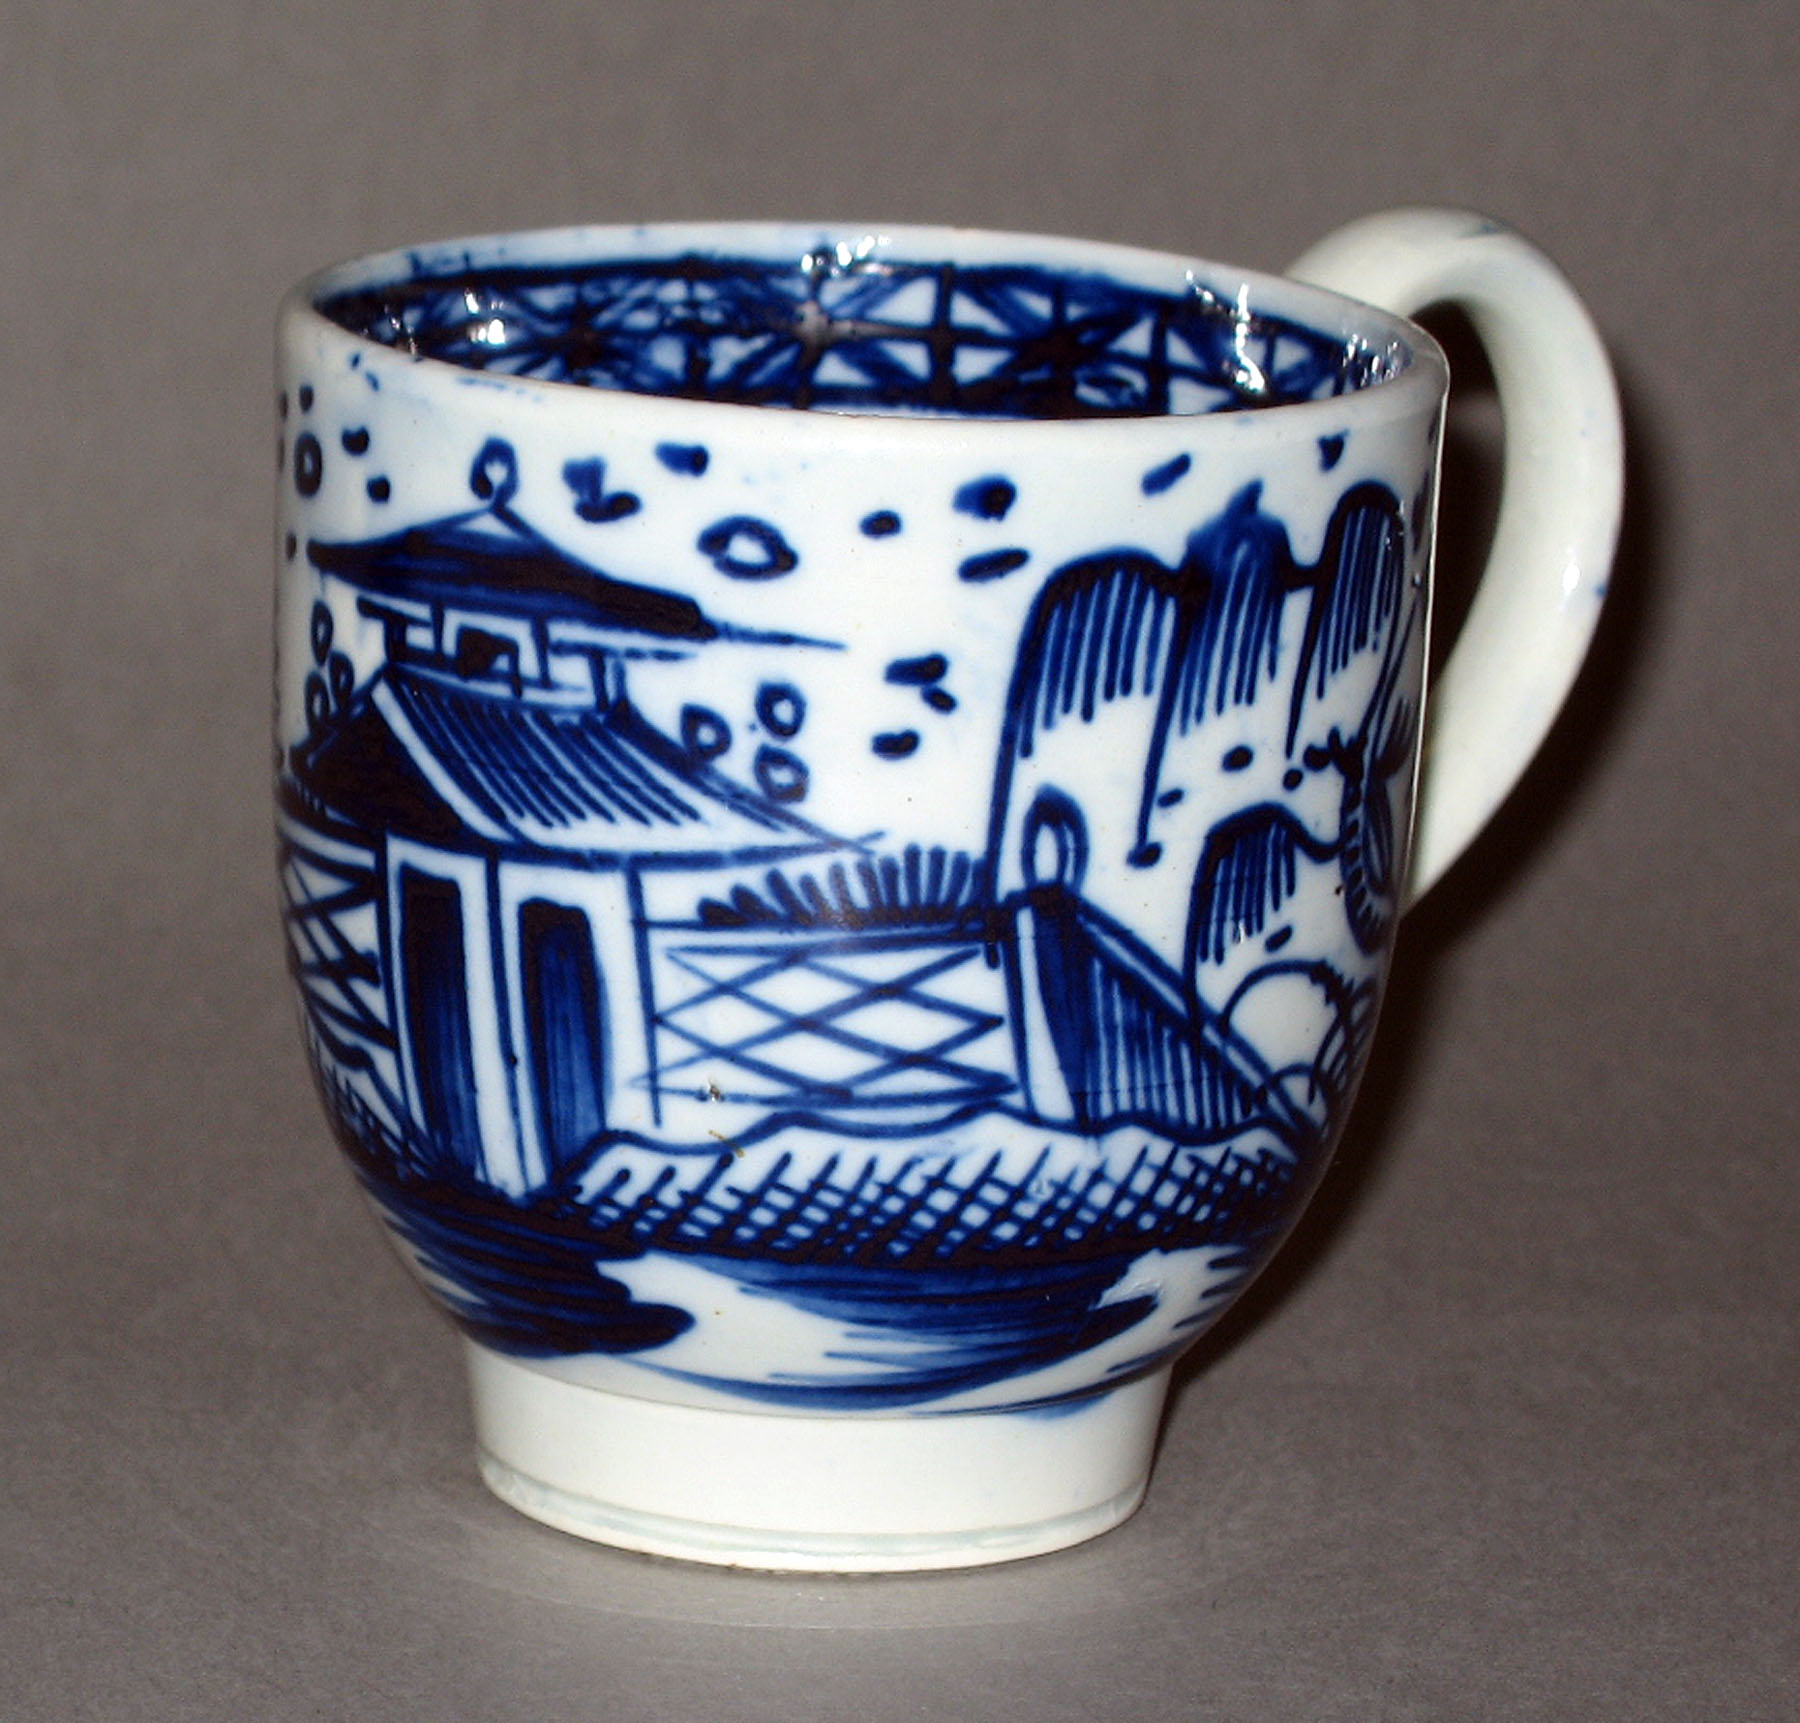 1952.0208.001 Pearlware teacup